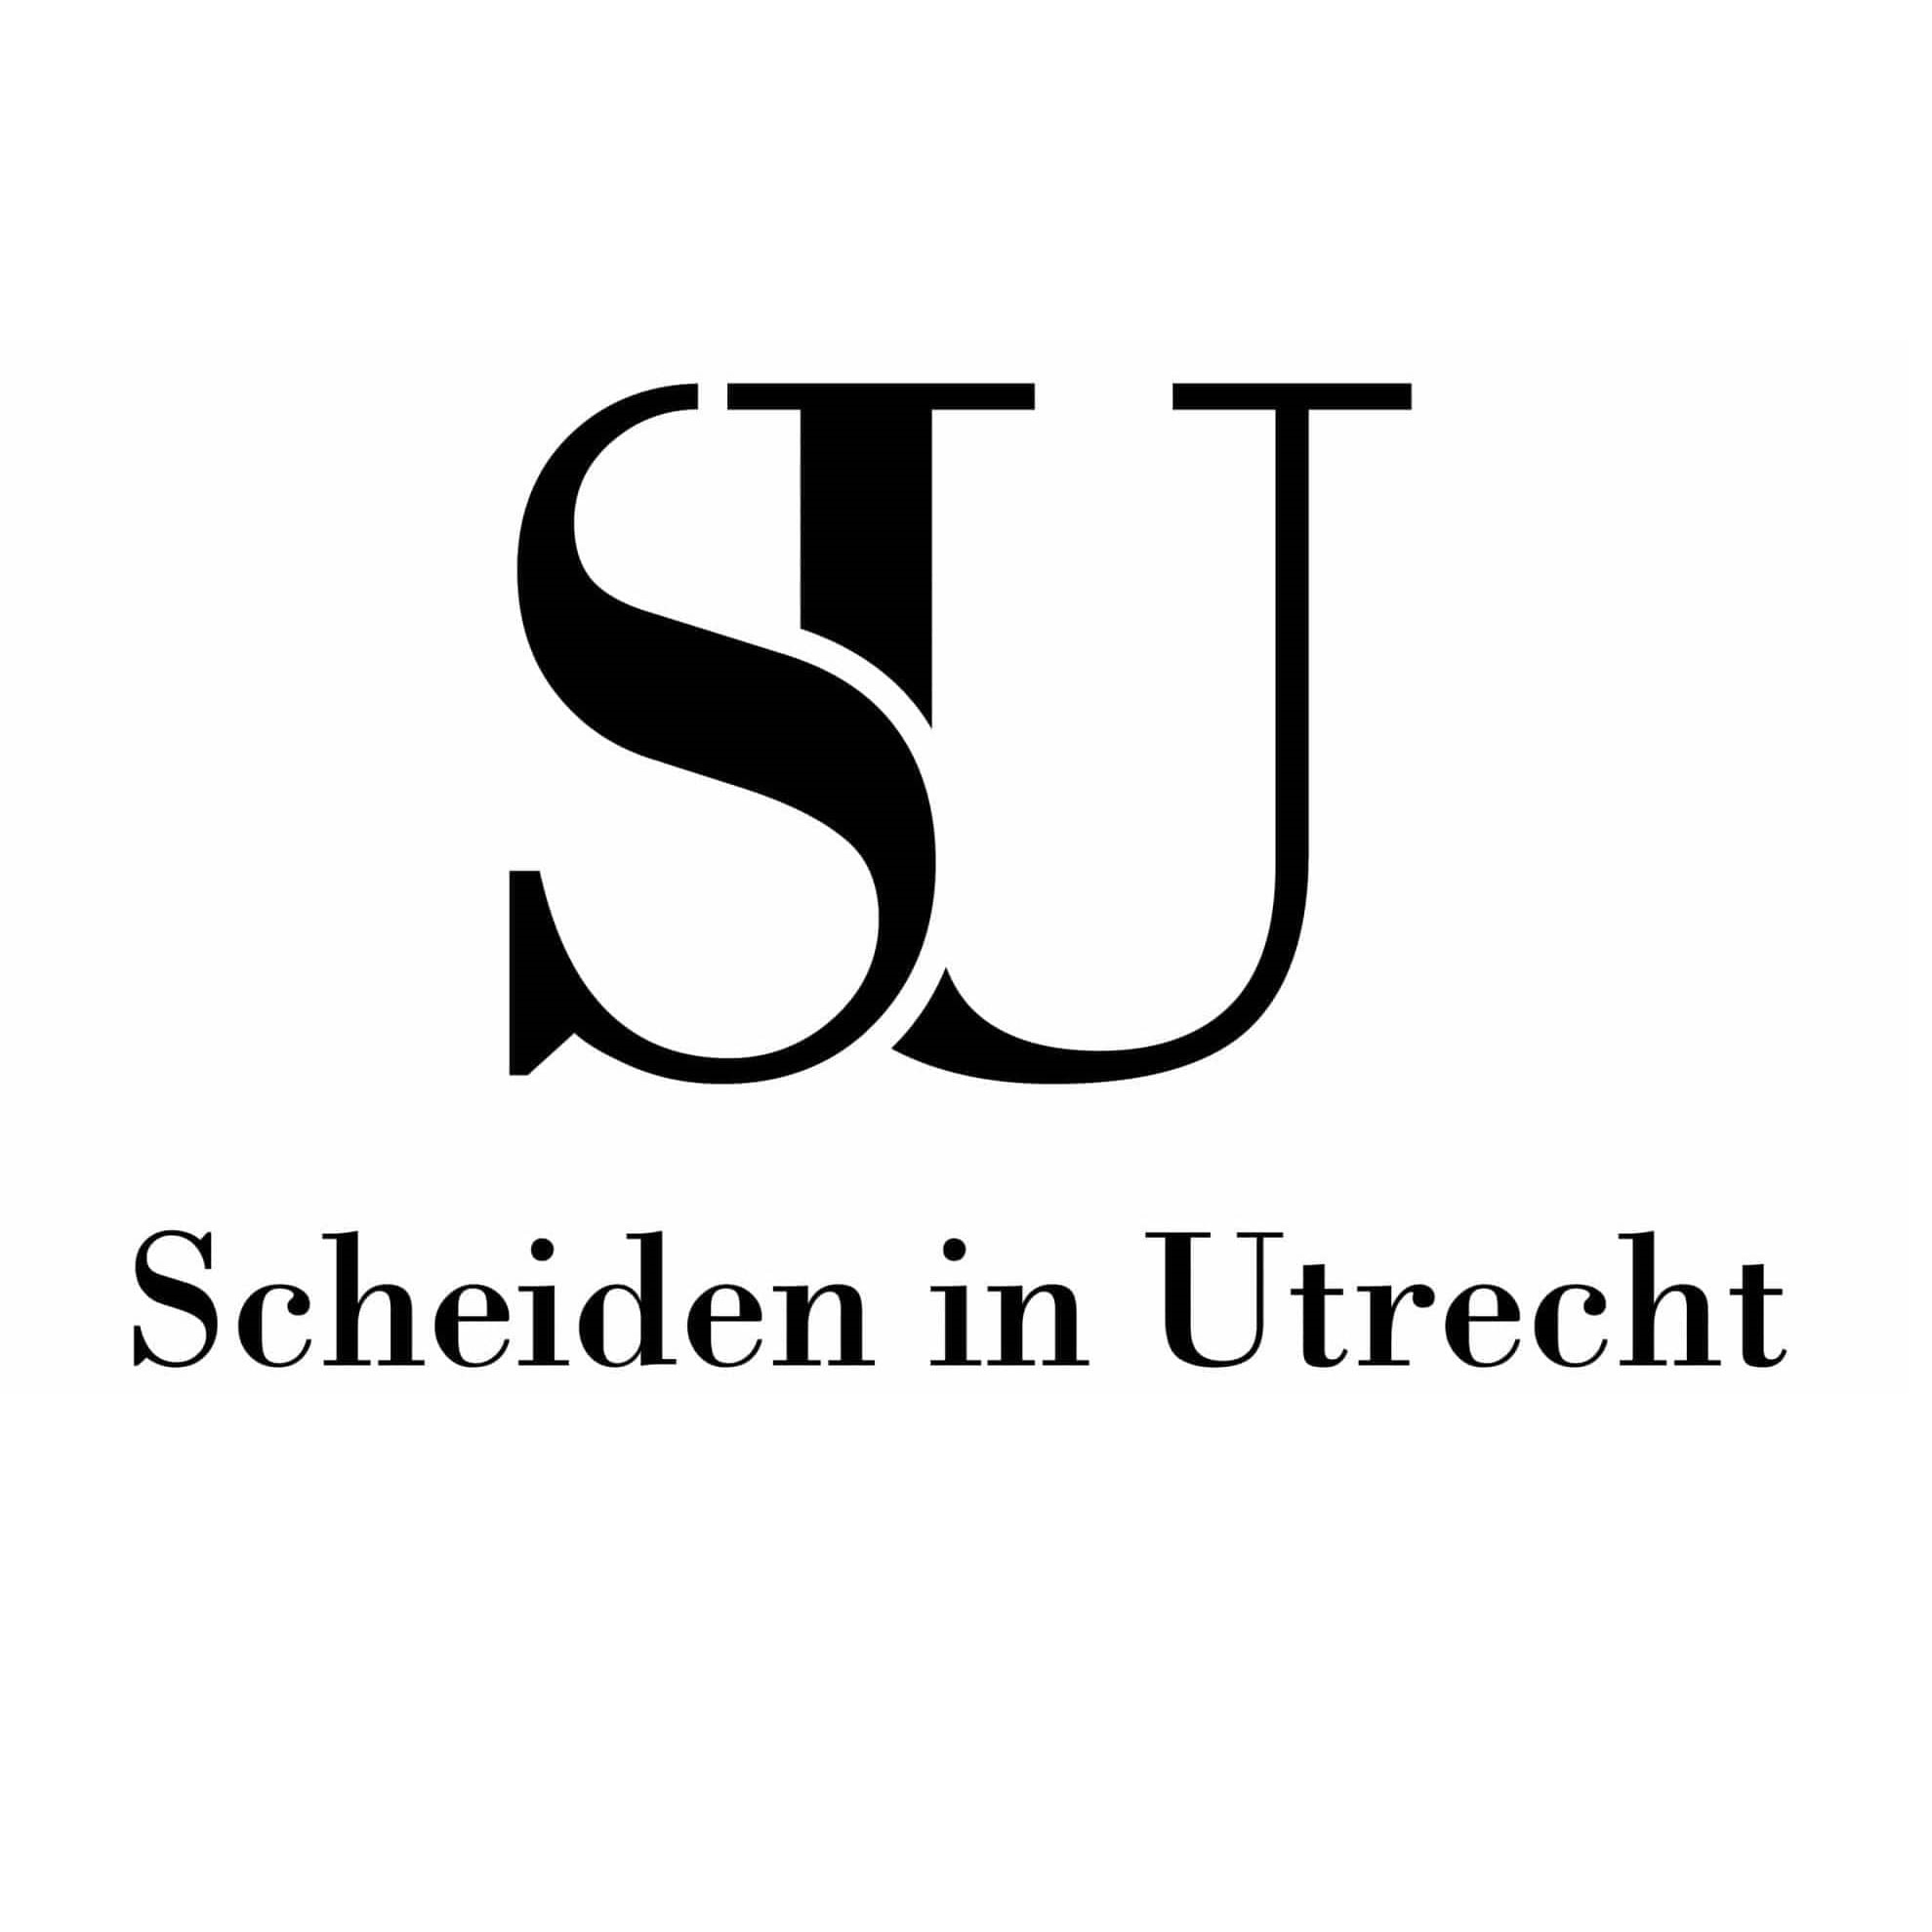 Scheiden in Utrecht